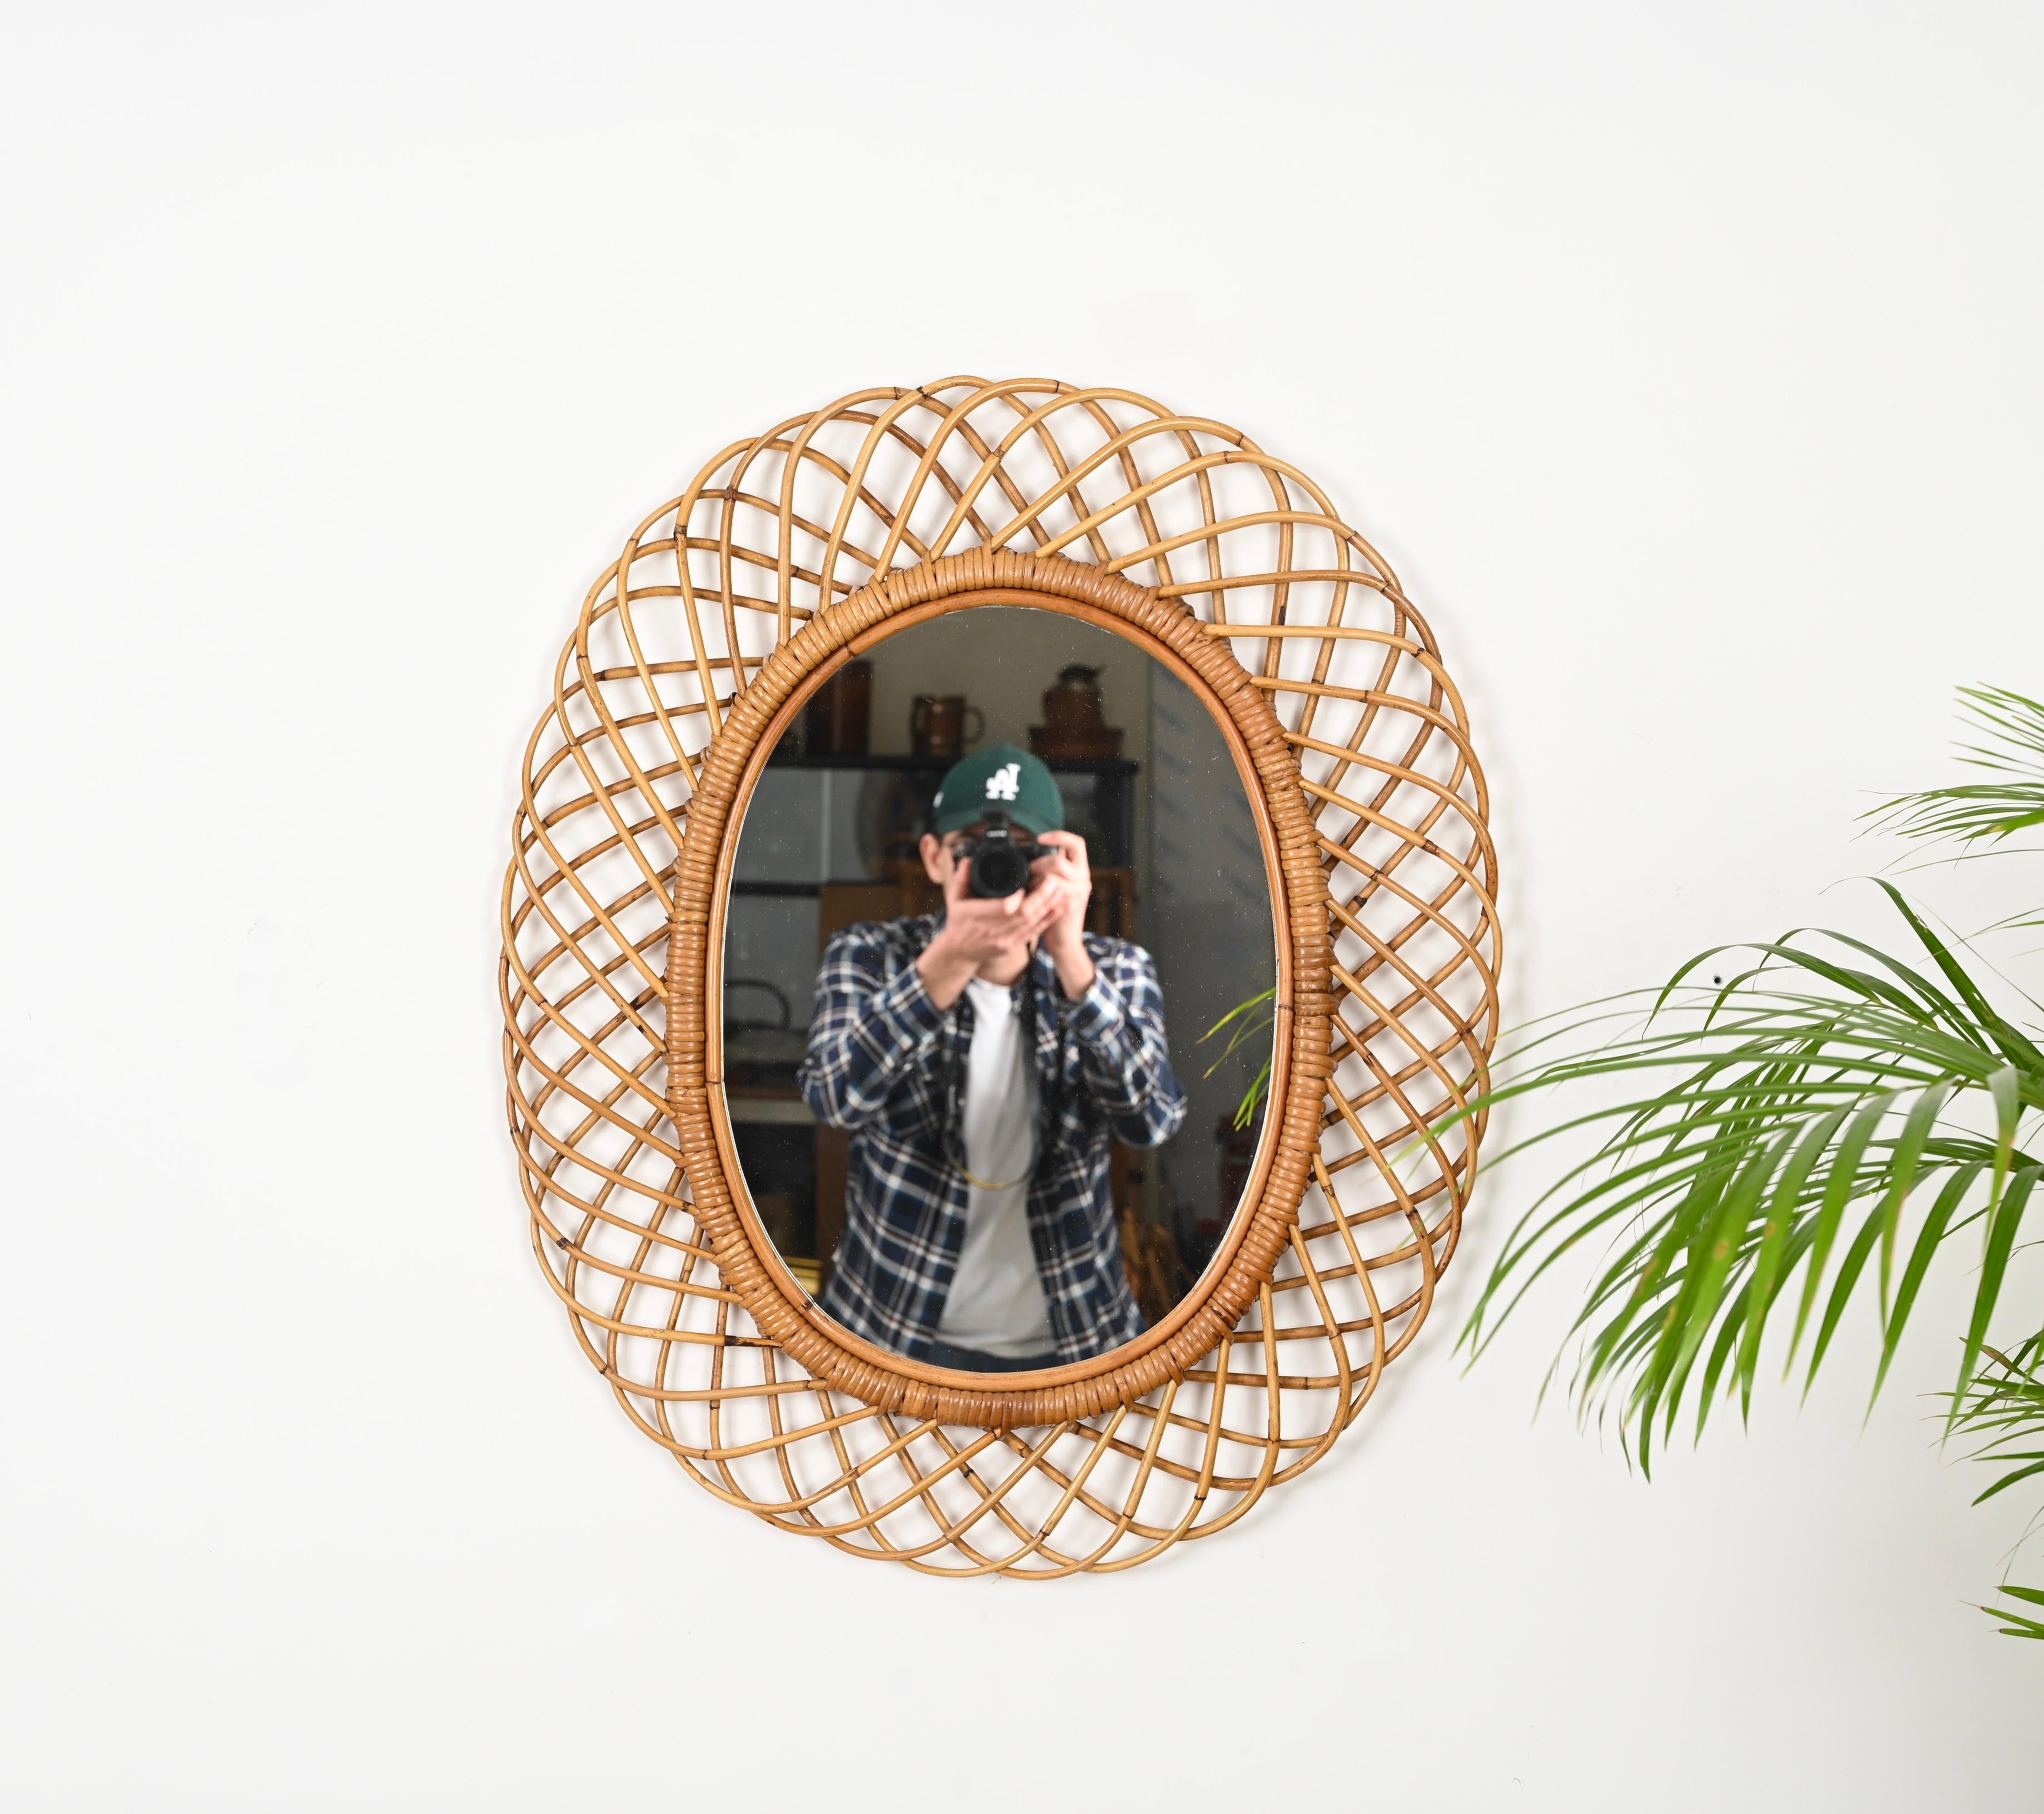 Prächtiger großer ovaler Spiegel aus der Mitte des Jahrhunderts aus gebogenem Rattan, Bambus und Weide. Dieses prächtige Stück wurde von Franco Albini entworfen und in den 1960er Jahren in Italien hergestellt.

Dieser dekorative ovale Spiegel ist